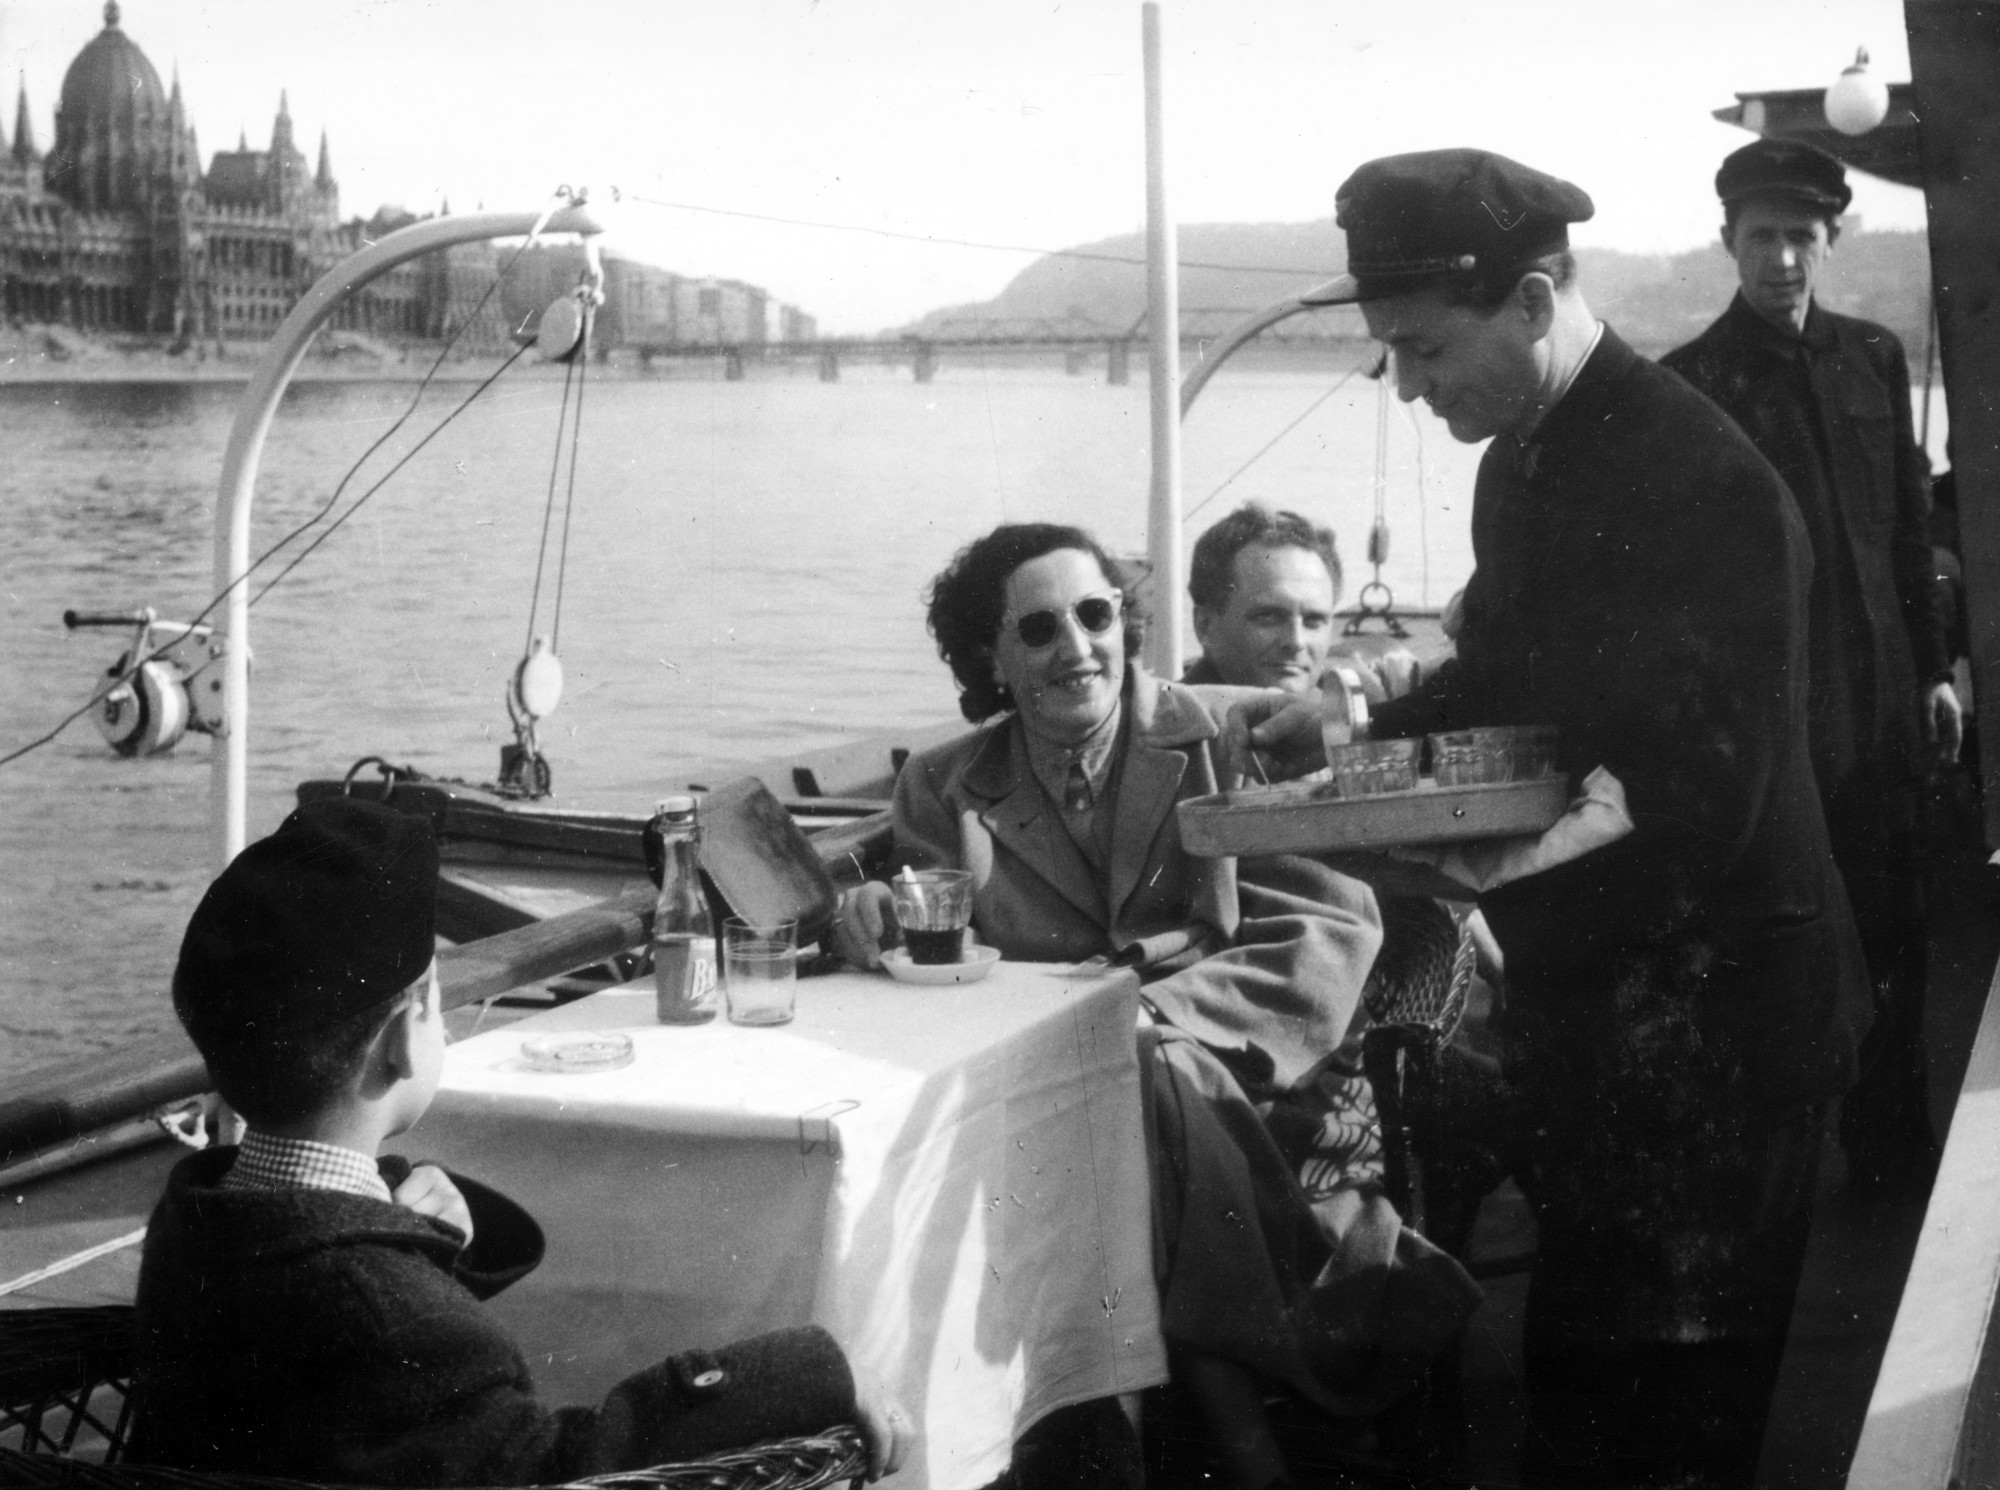 Sétahajóval a Dunán, 1955. Háttérben a Parlament és a Kossuth híd.